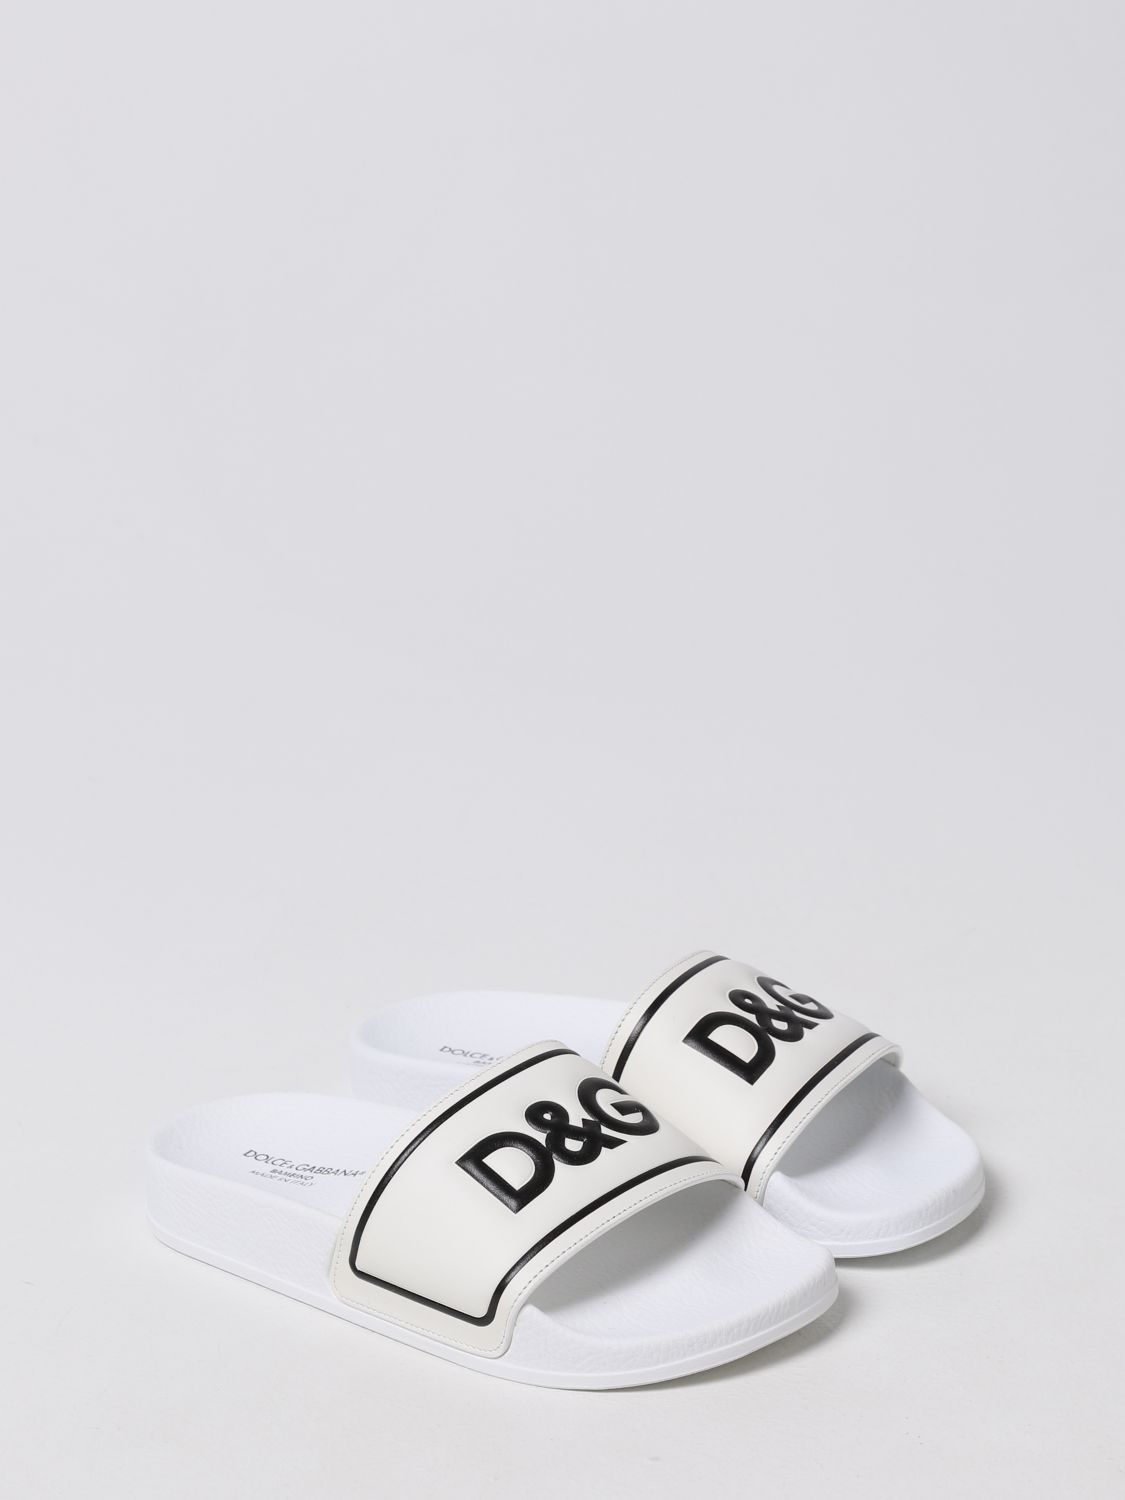 DOLCE & GABBANA: Sandalias con logo, Blanco | Zapatos Dolce & Gabbana DD0318A6E33 en línea GIGLIO.COM